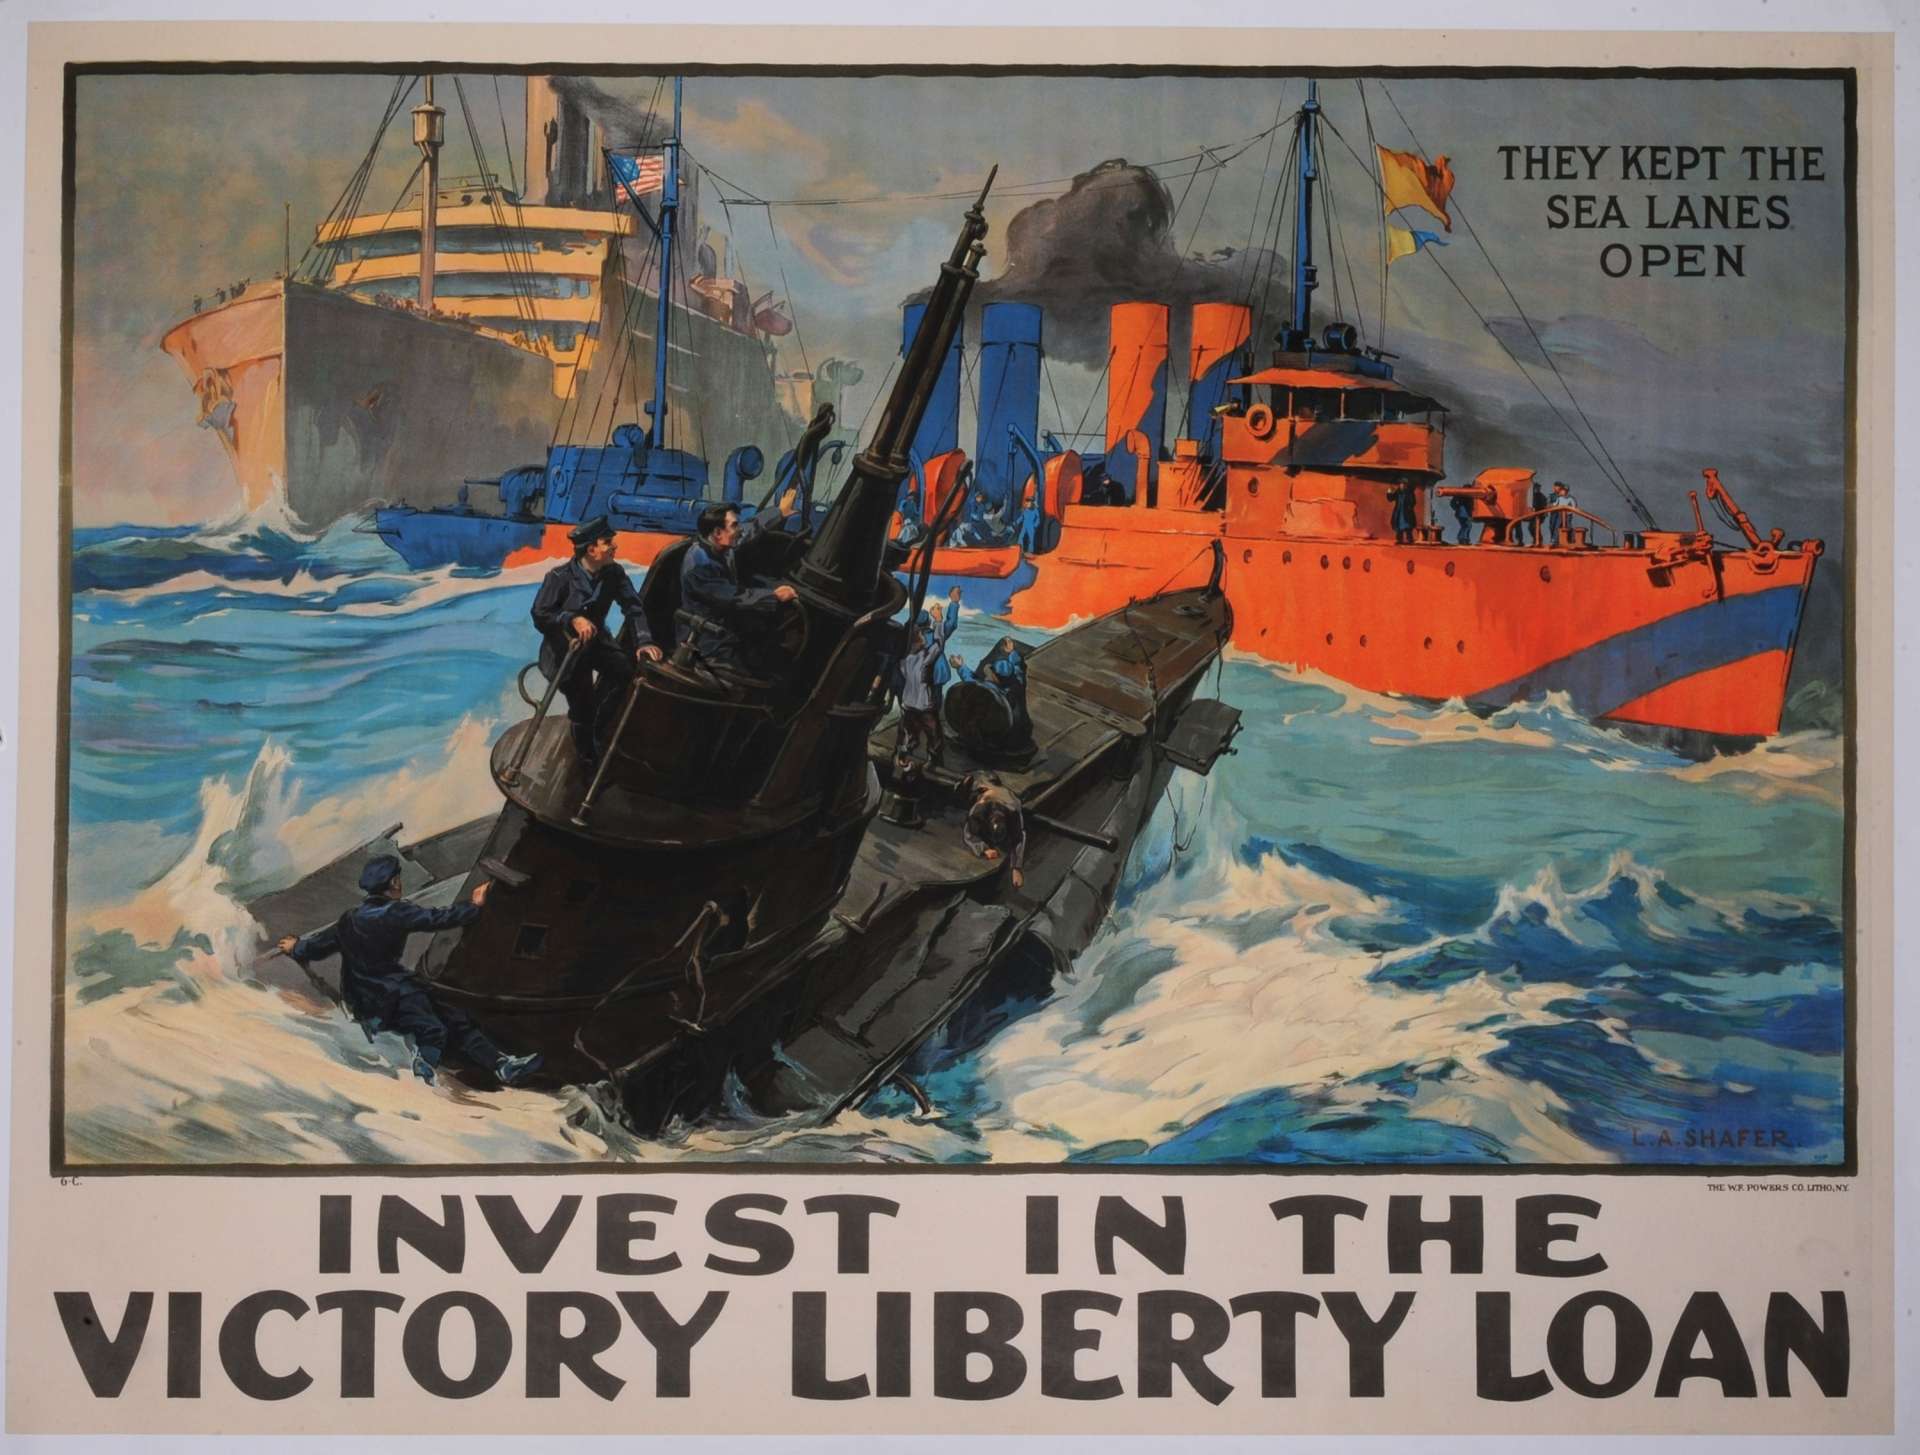 SHAFER Leon Alaric. (1866-1940) 1919
INVEST IN THE VICTORY LIBERTY LOAN. (Investissez dans l'emprunt de la victoire et de la liberté).